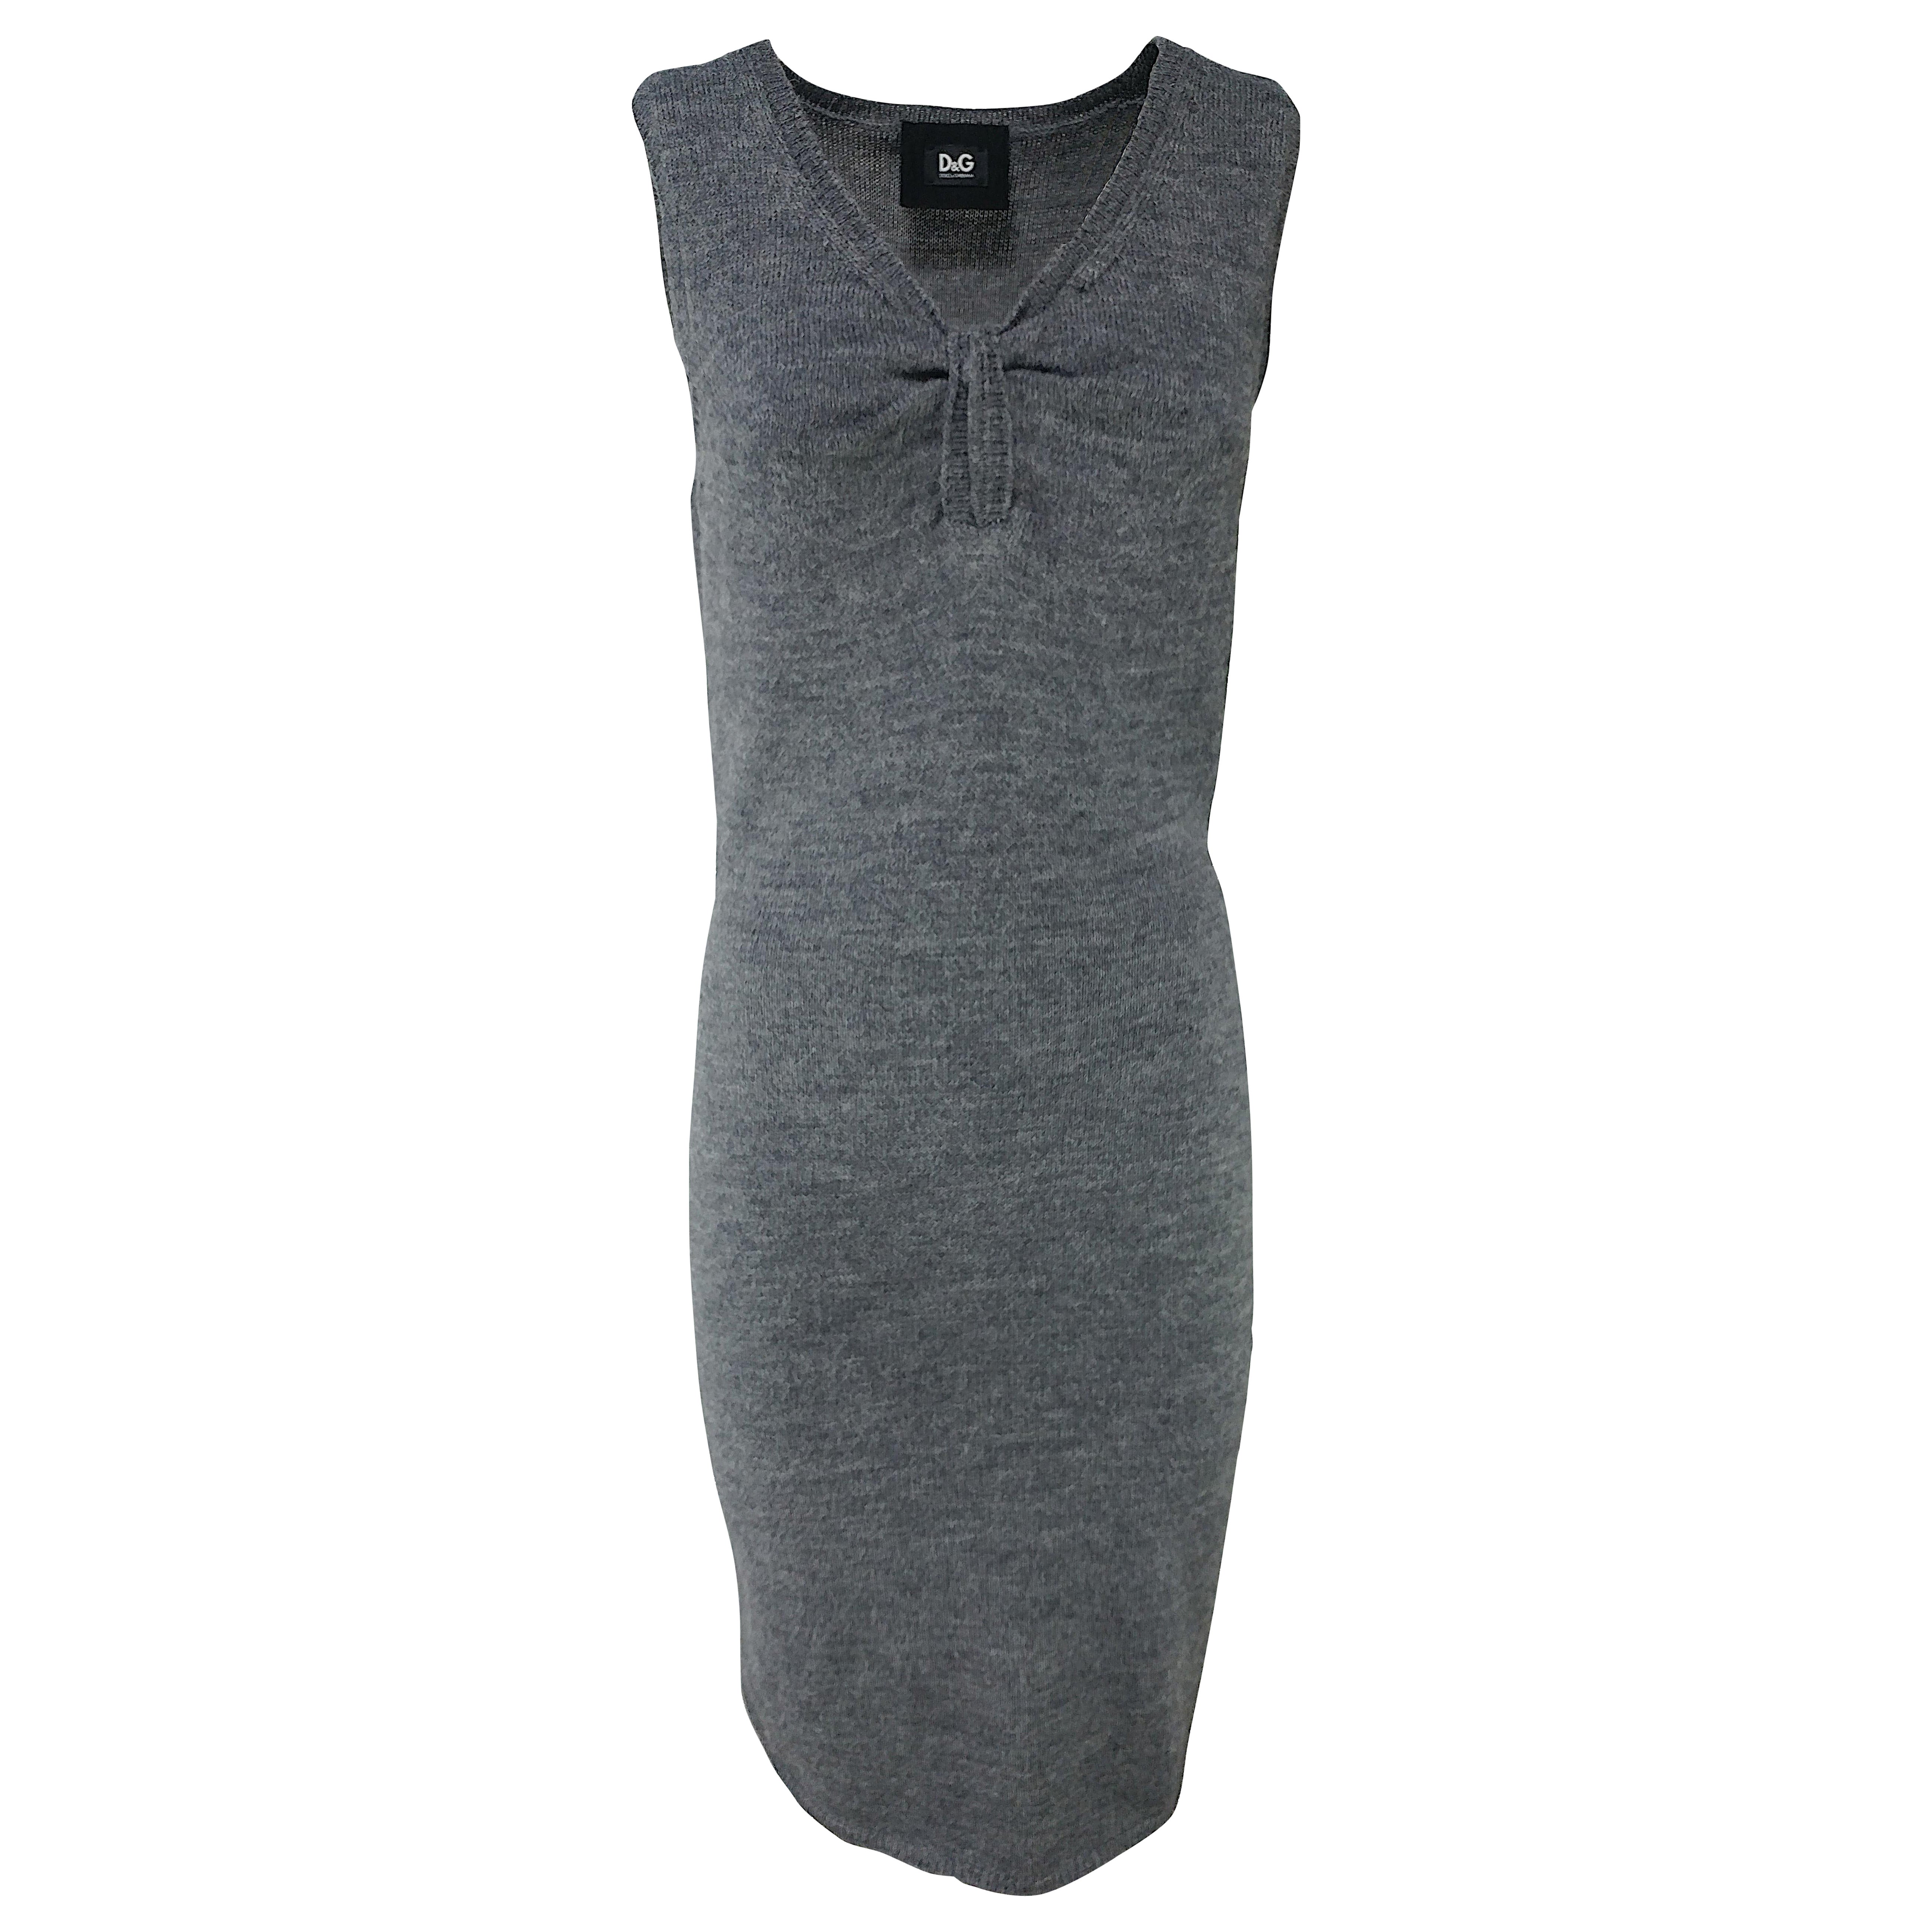 DOLCE & GABBANA - Grey Alpaca Wool Knit Bodycon Sleeveless Dress  Size 6US 38EU For Sale